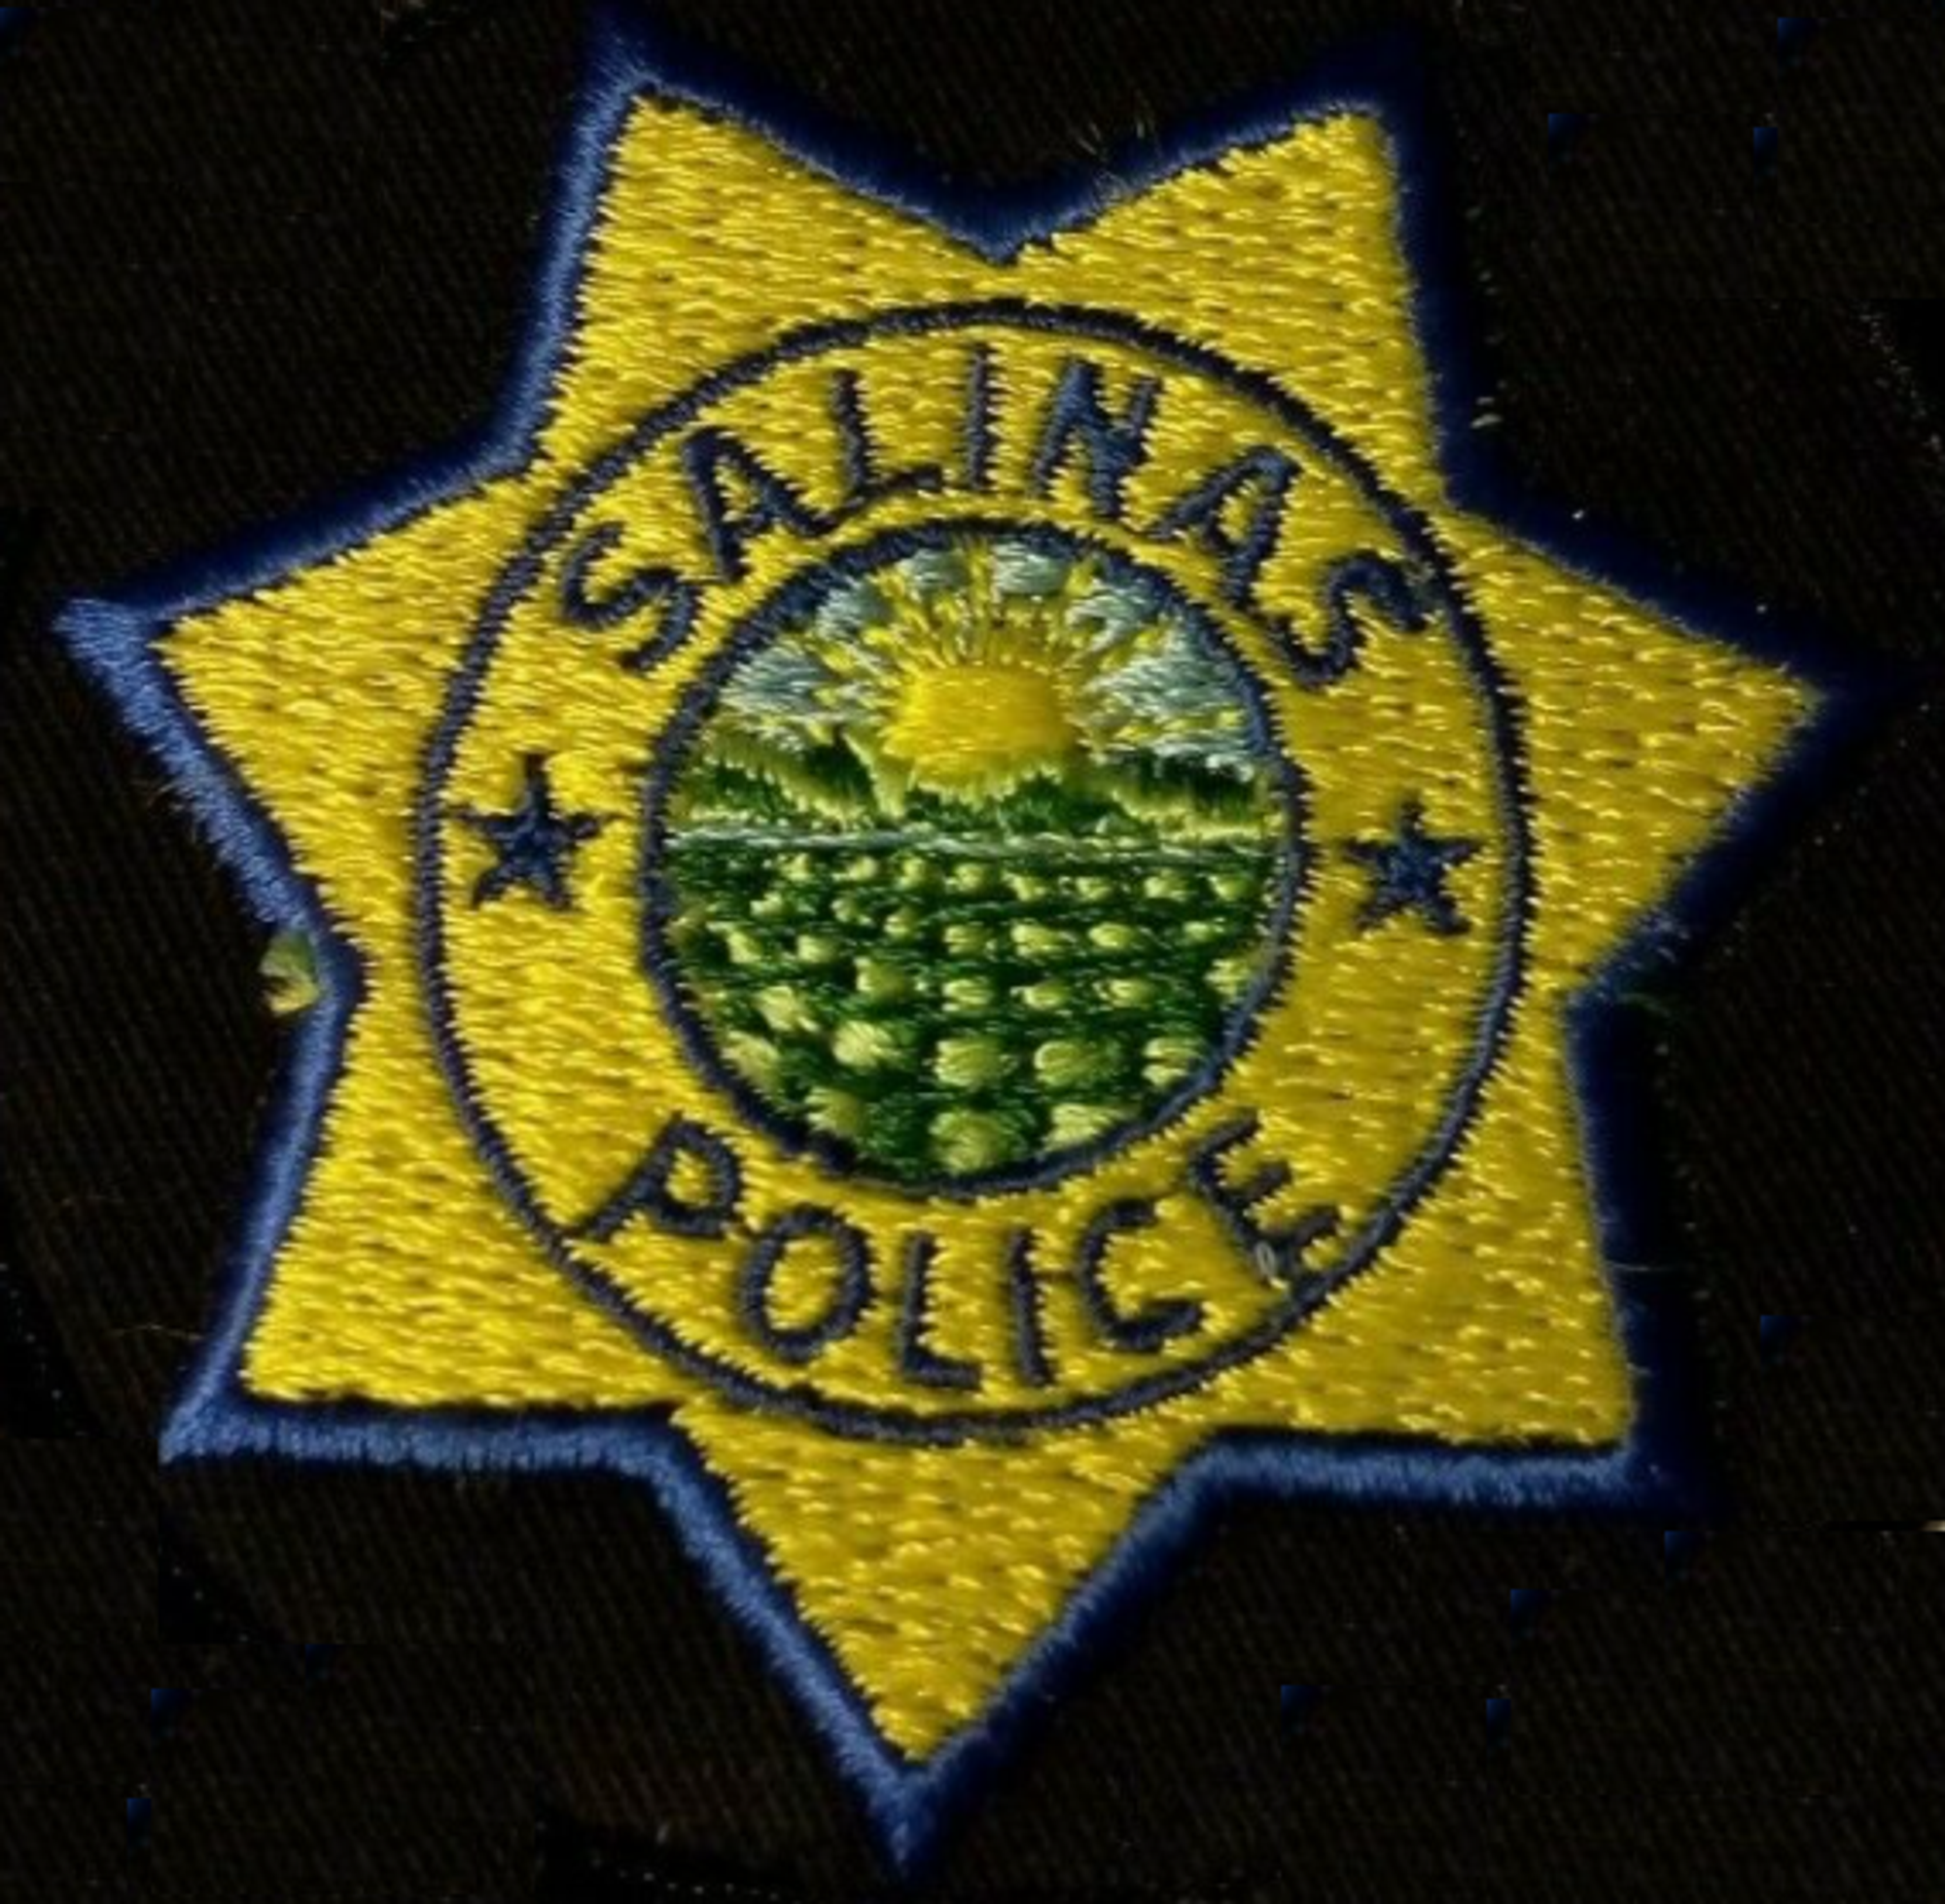 Salinas CA Police Patch